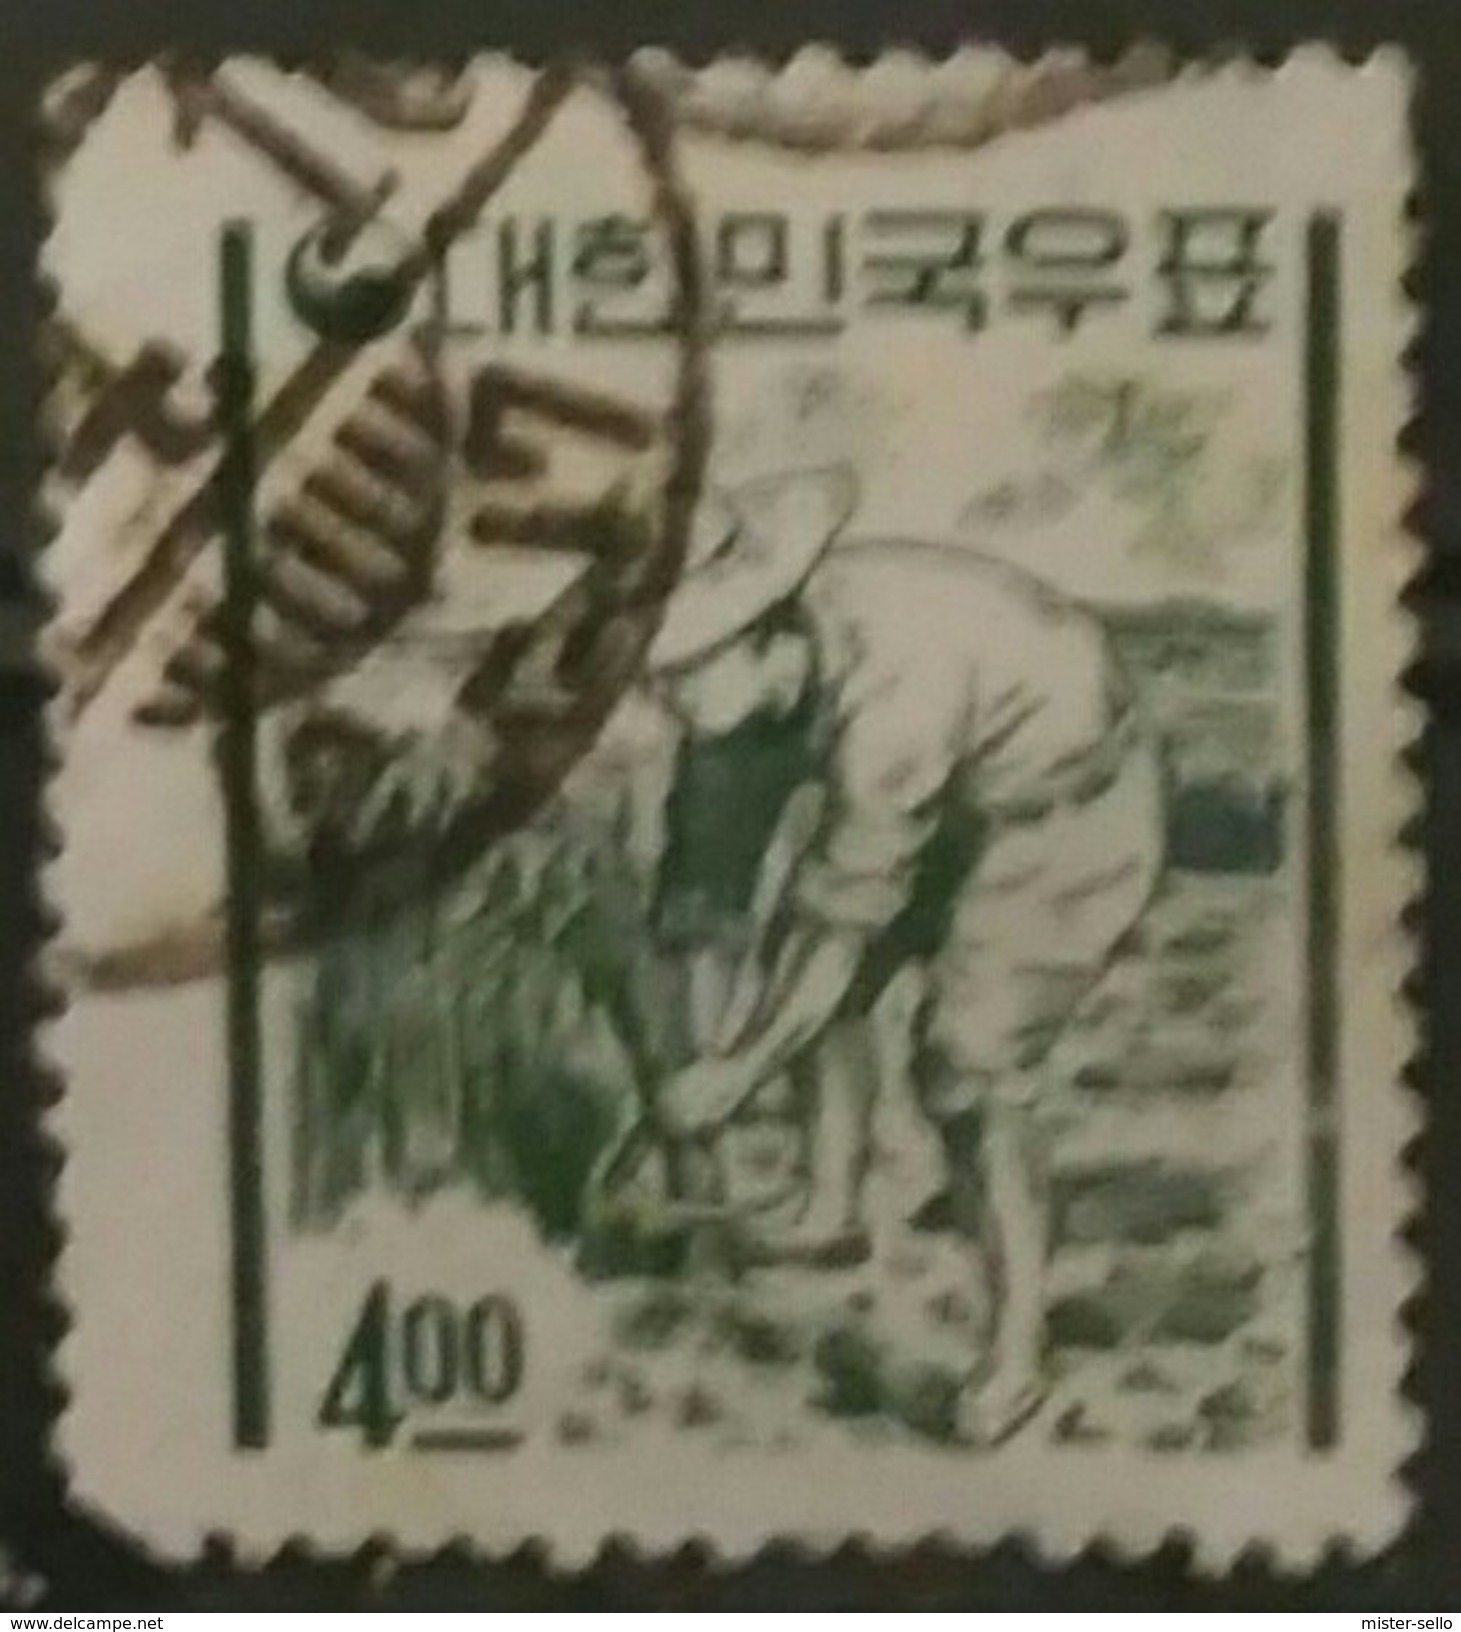 COREA DEL SUR 1962 -1963 Iconos Nacionales En La Nueva Moneda. USADO - USED. - Corea Del Sur